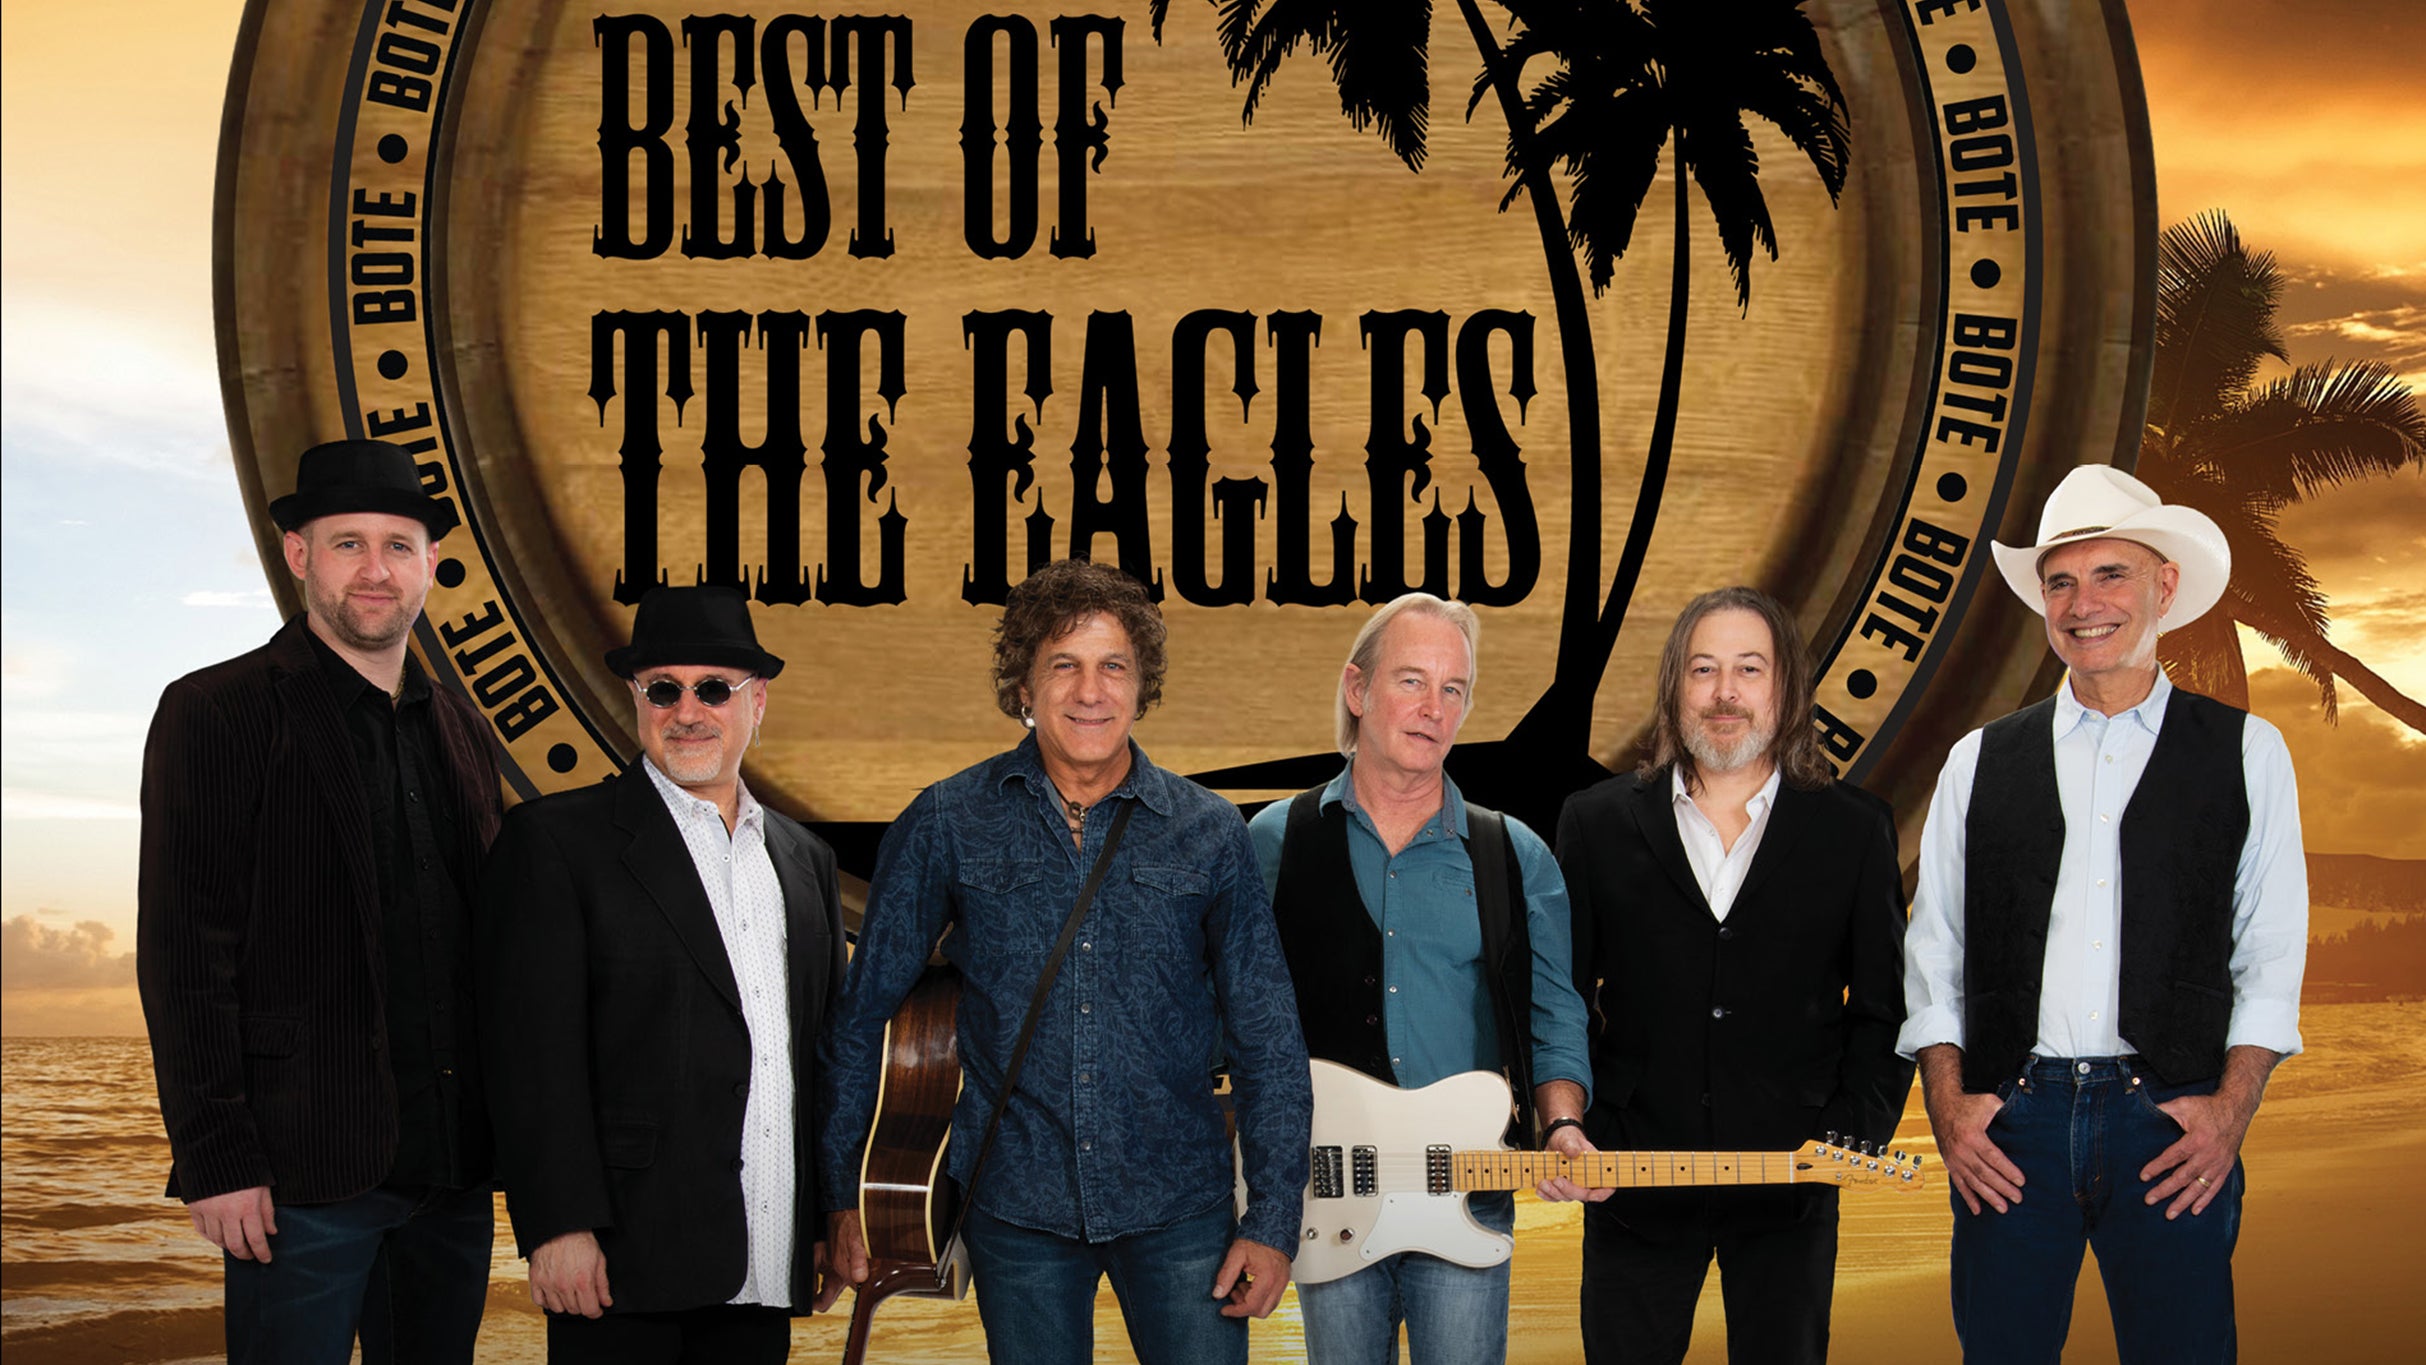 The Best of The Eagles presale c0de